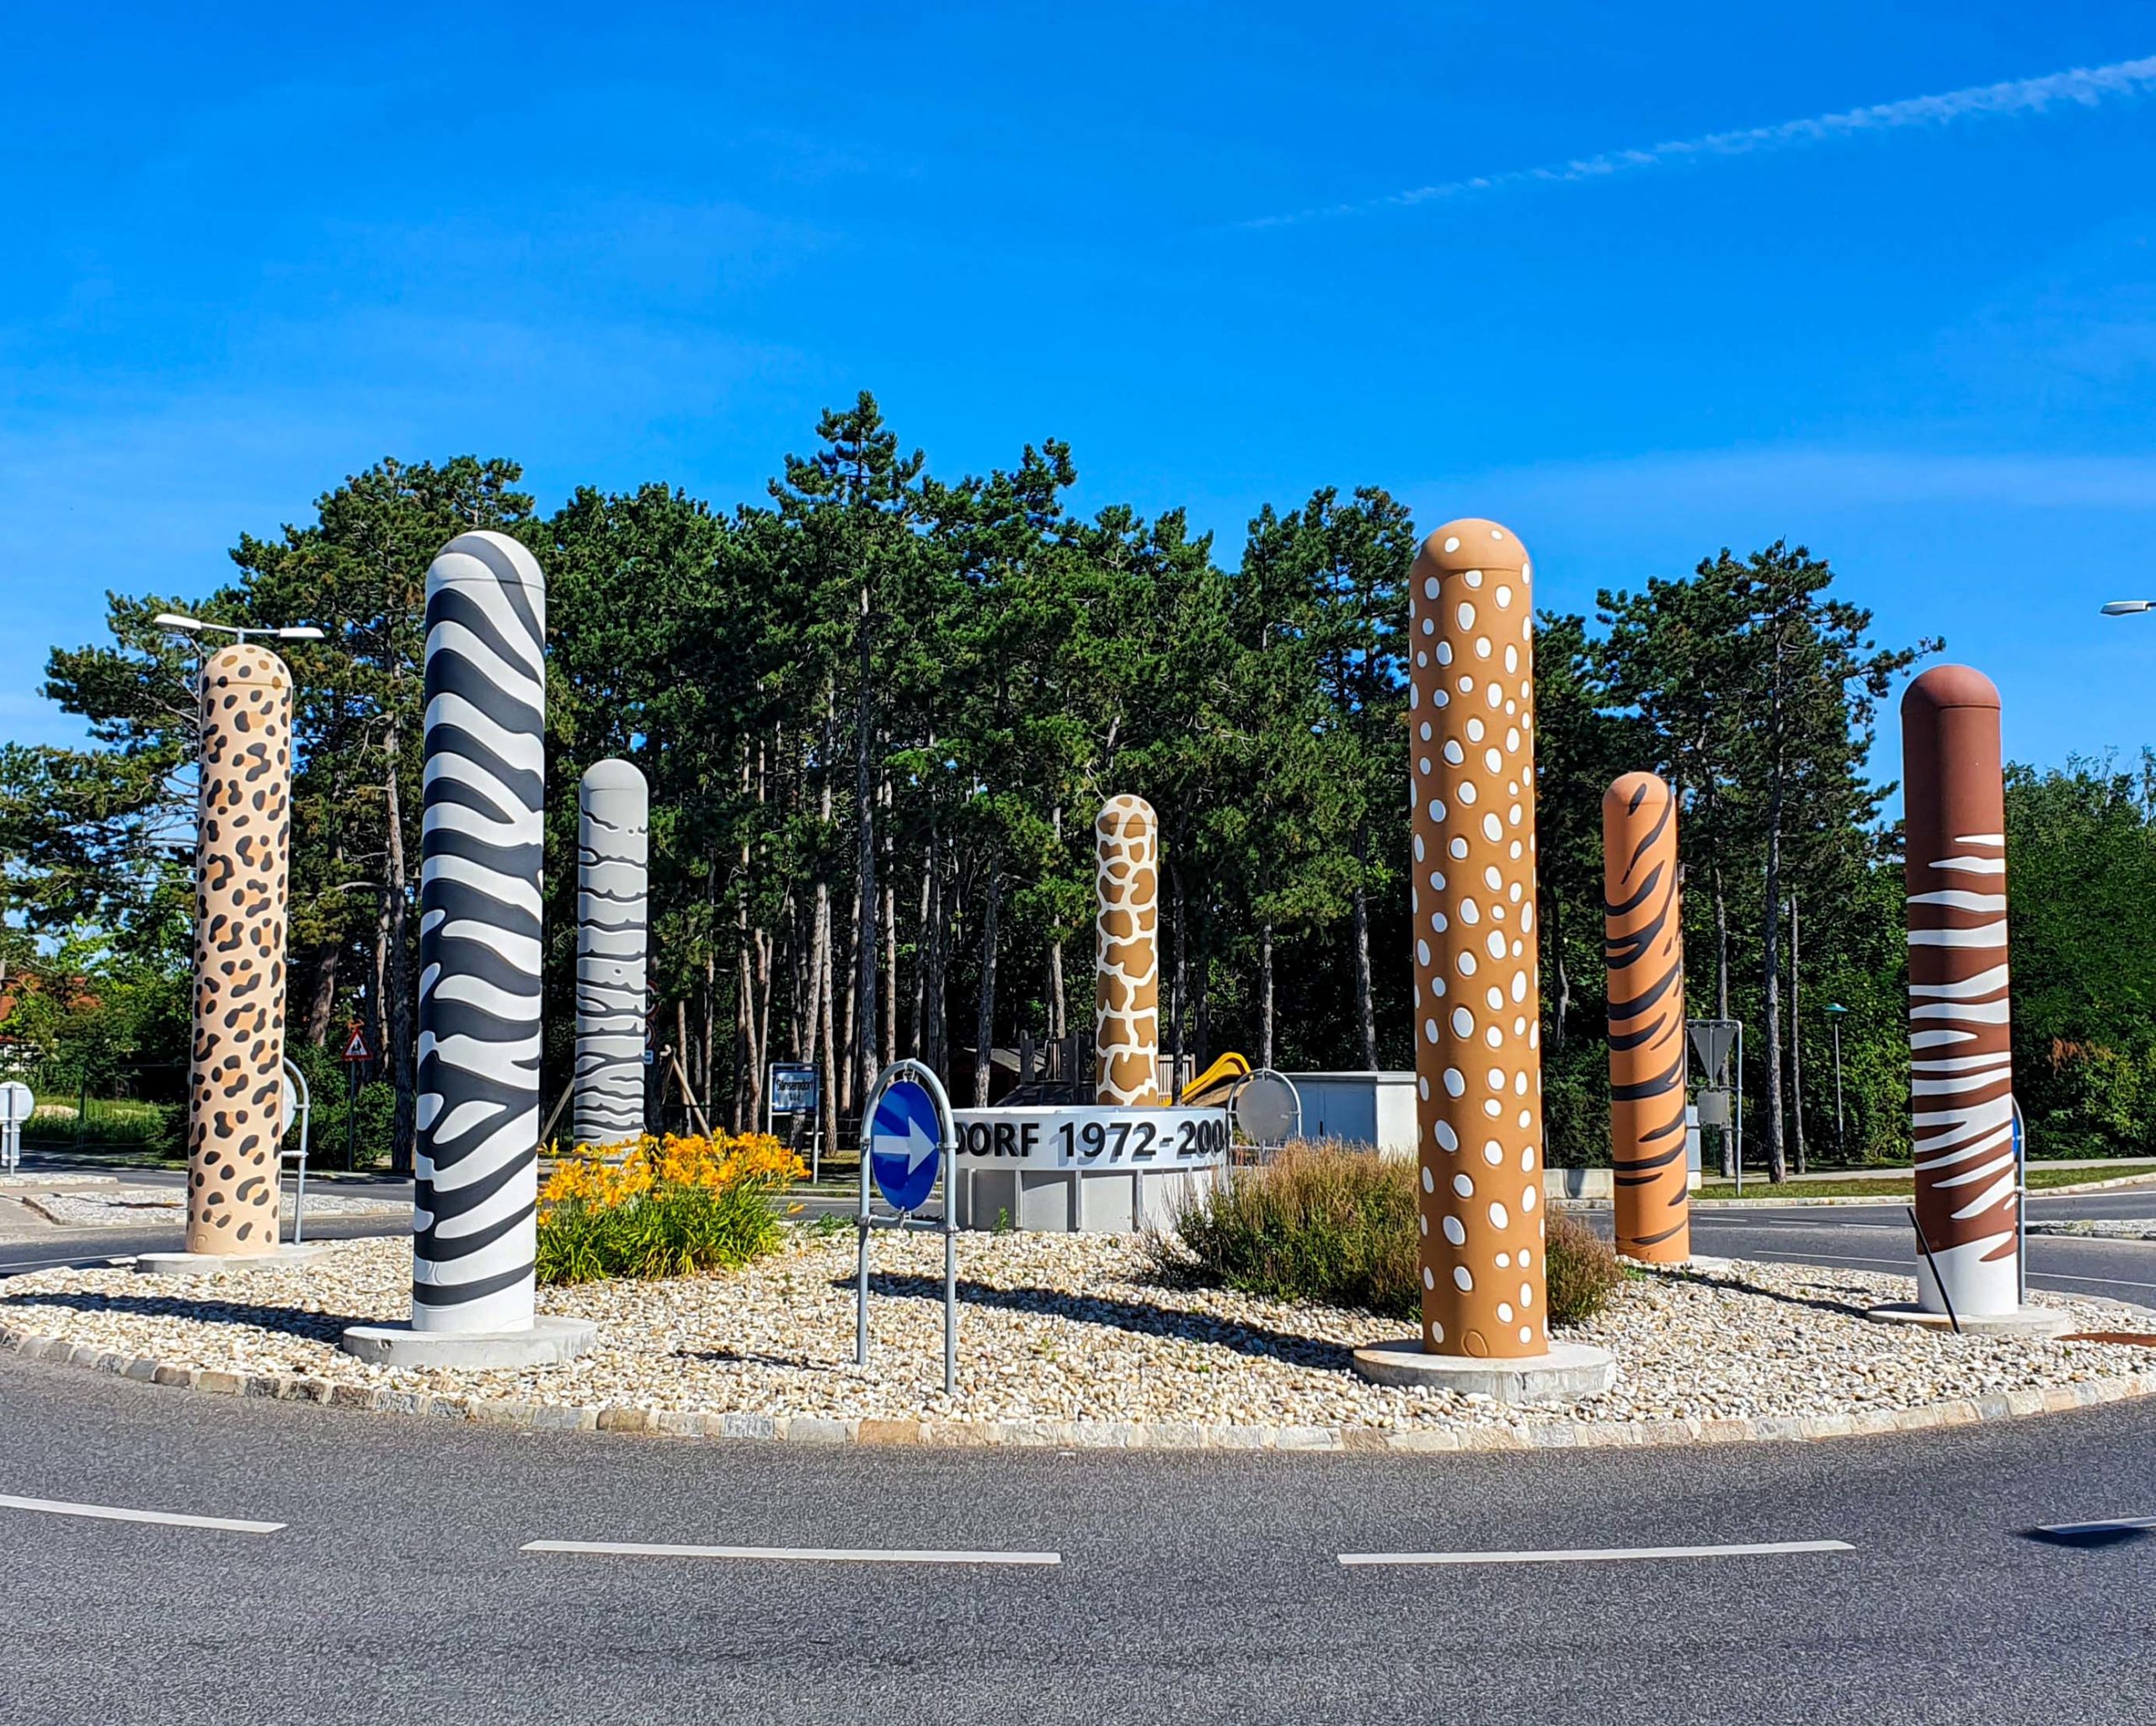 Safaripark Säulen in Gänserndorf Süd